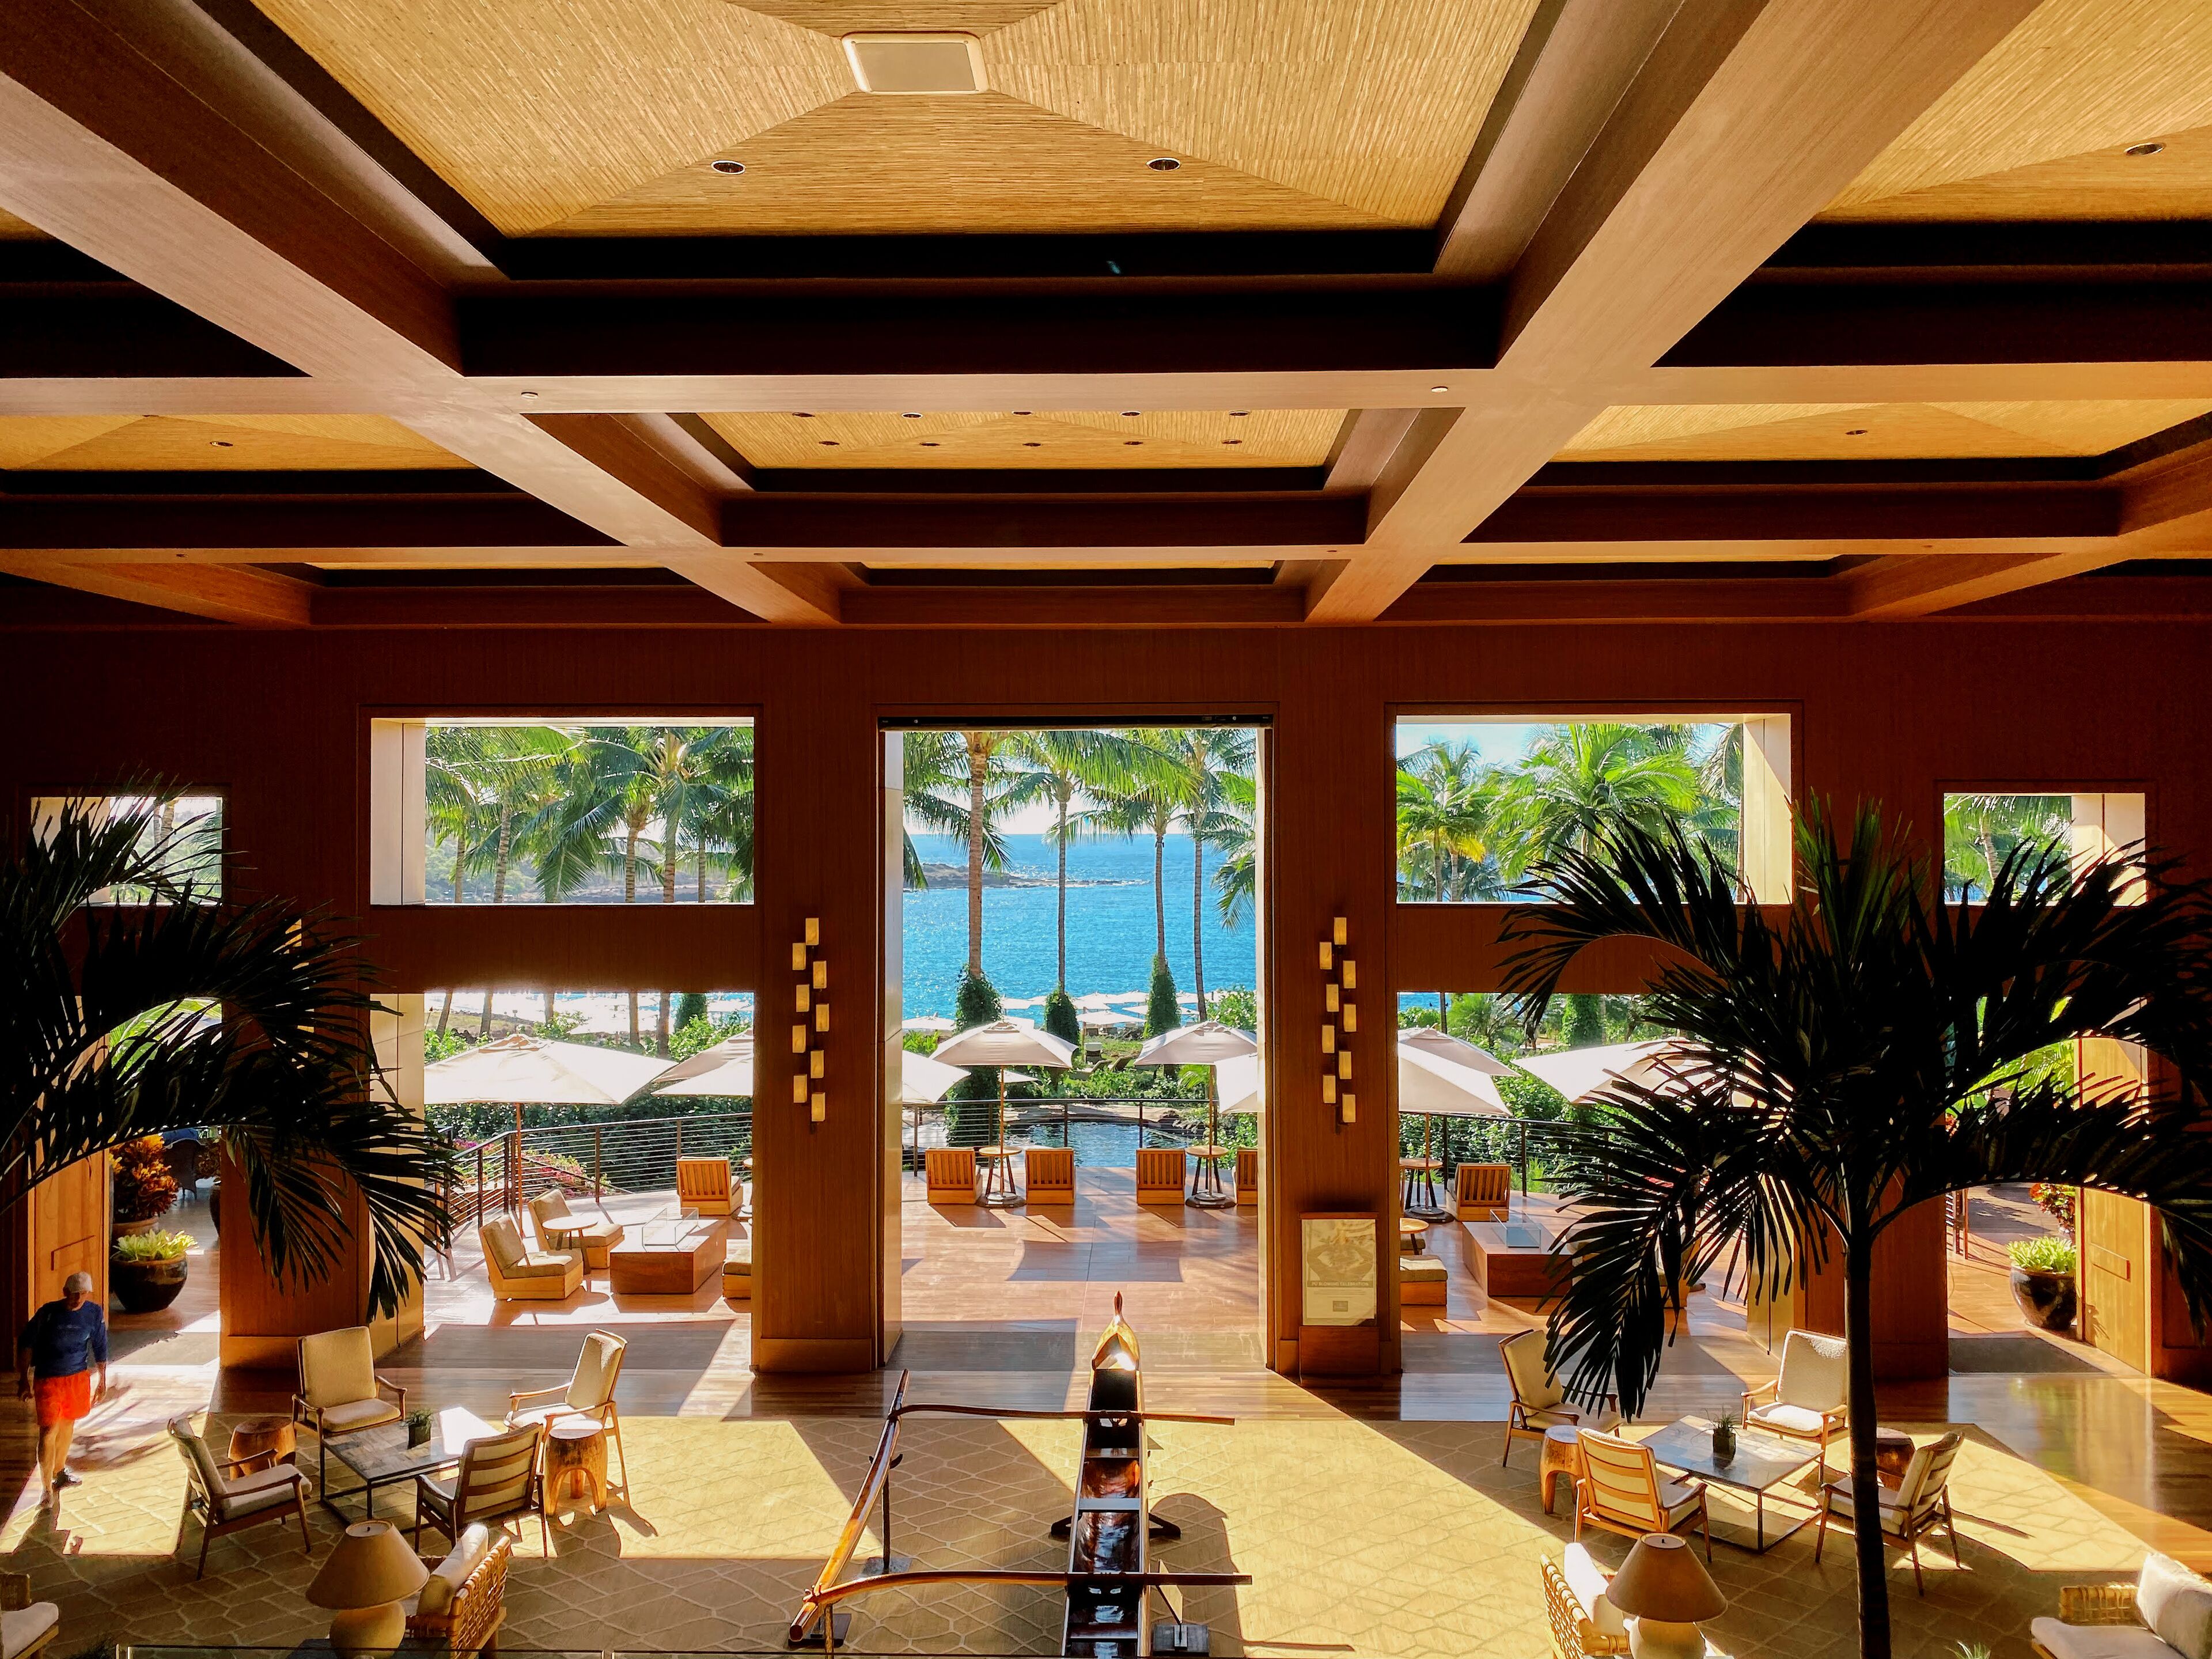 Lobby view of Four Seasons Resort Lanai